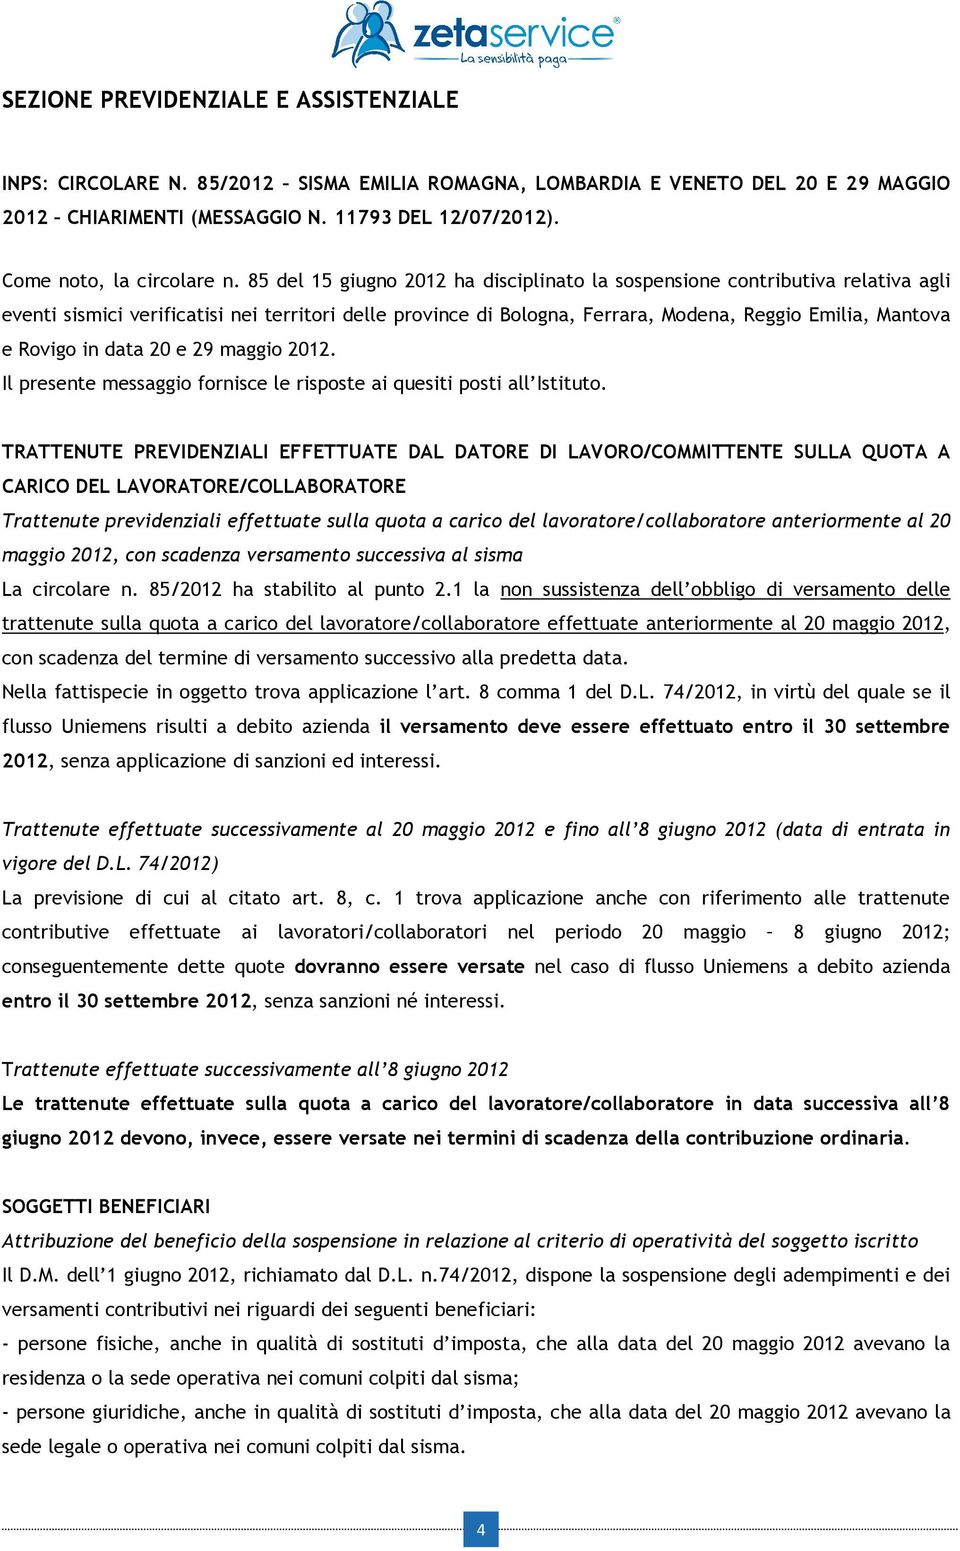 85 del 15 giugno 2012 ha disciplinato la sospensione contributiva relativa agli eventi sismici verificatisi nei territori delle province di Bologna, Ferrara, Modena, Reggio Emilia, Mantova e Rovigo